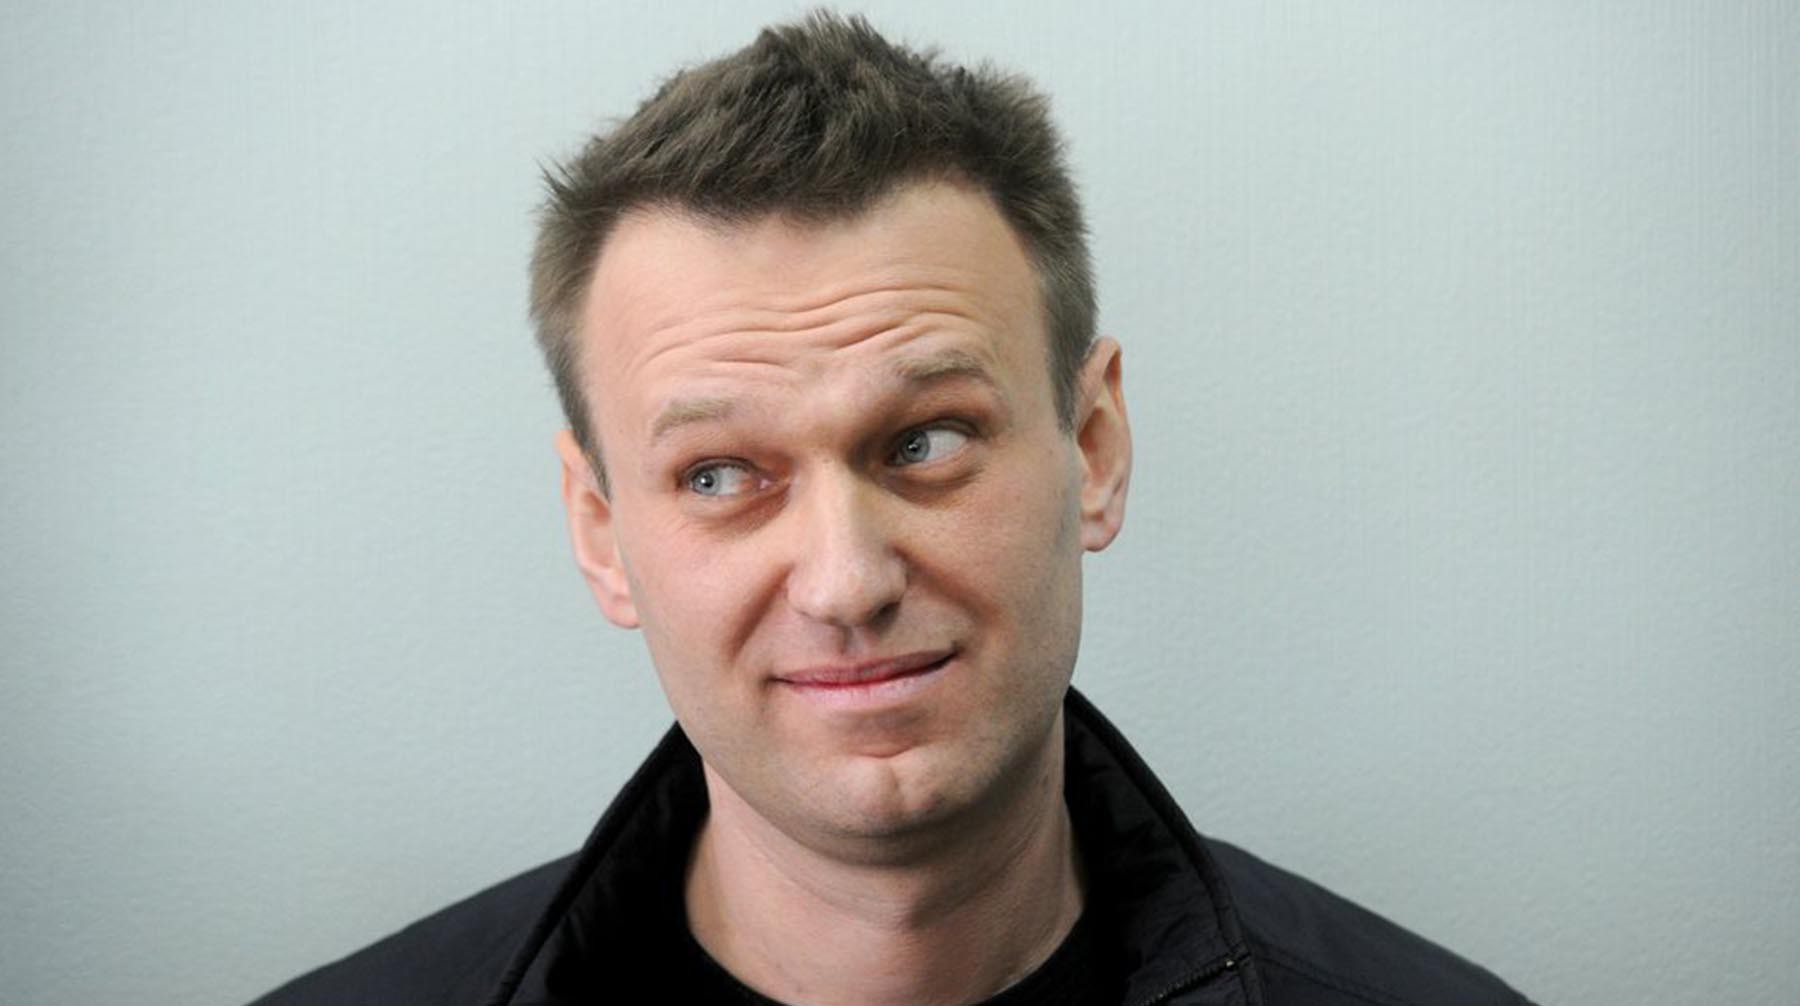 Dailystorm - Суд повторно рассмотрит жалобу на бездействие следователей в связи с отравлением Навального